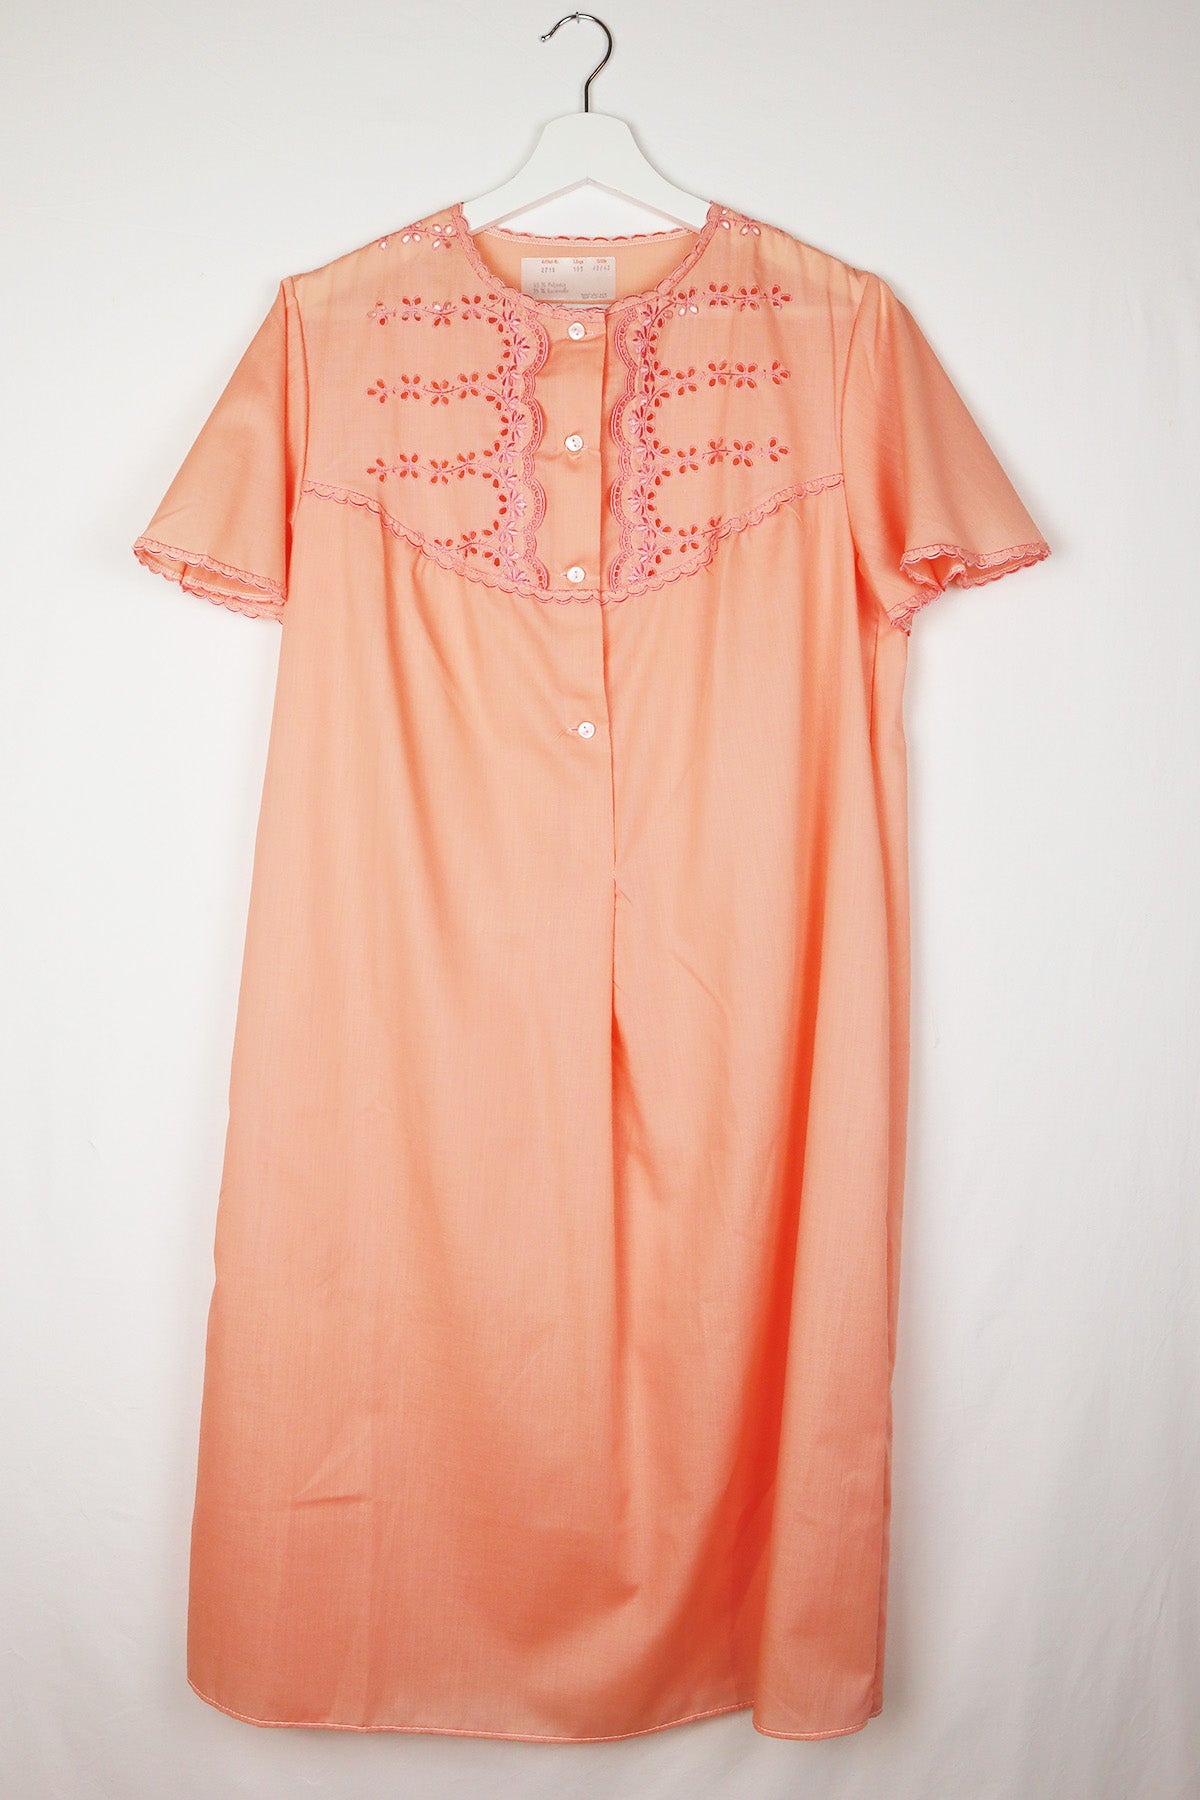 Nachthemd Vintage Pfirsich ( Gr. M/L )